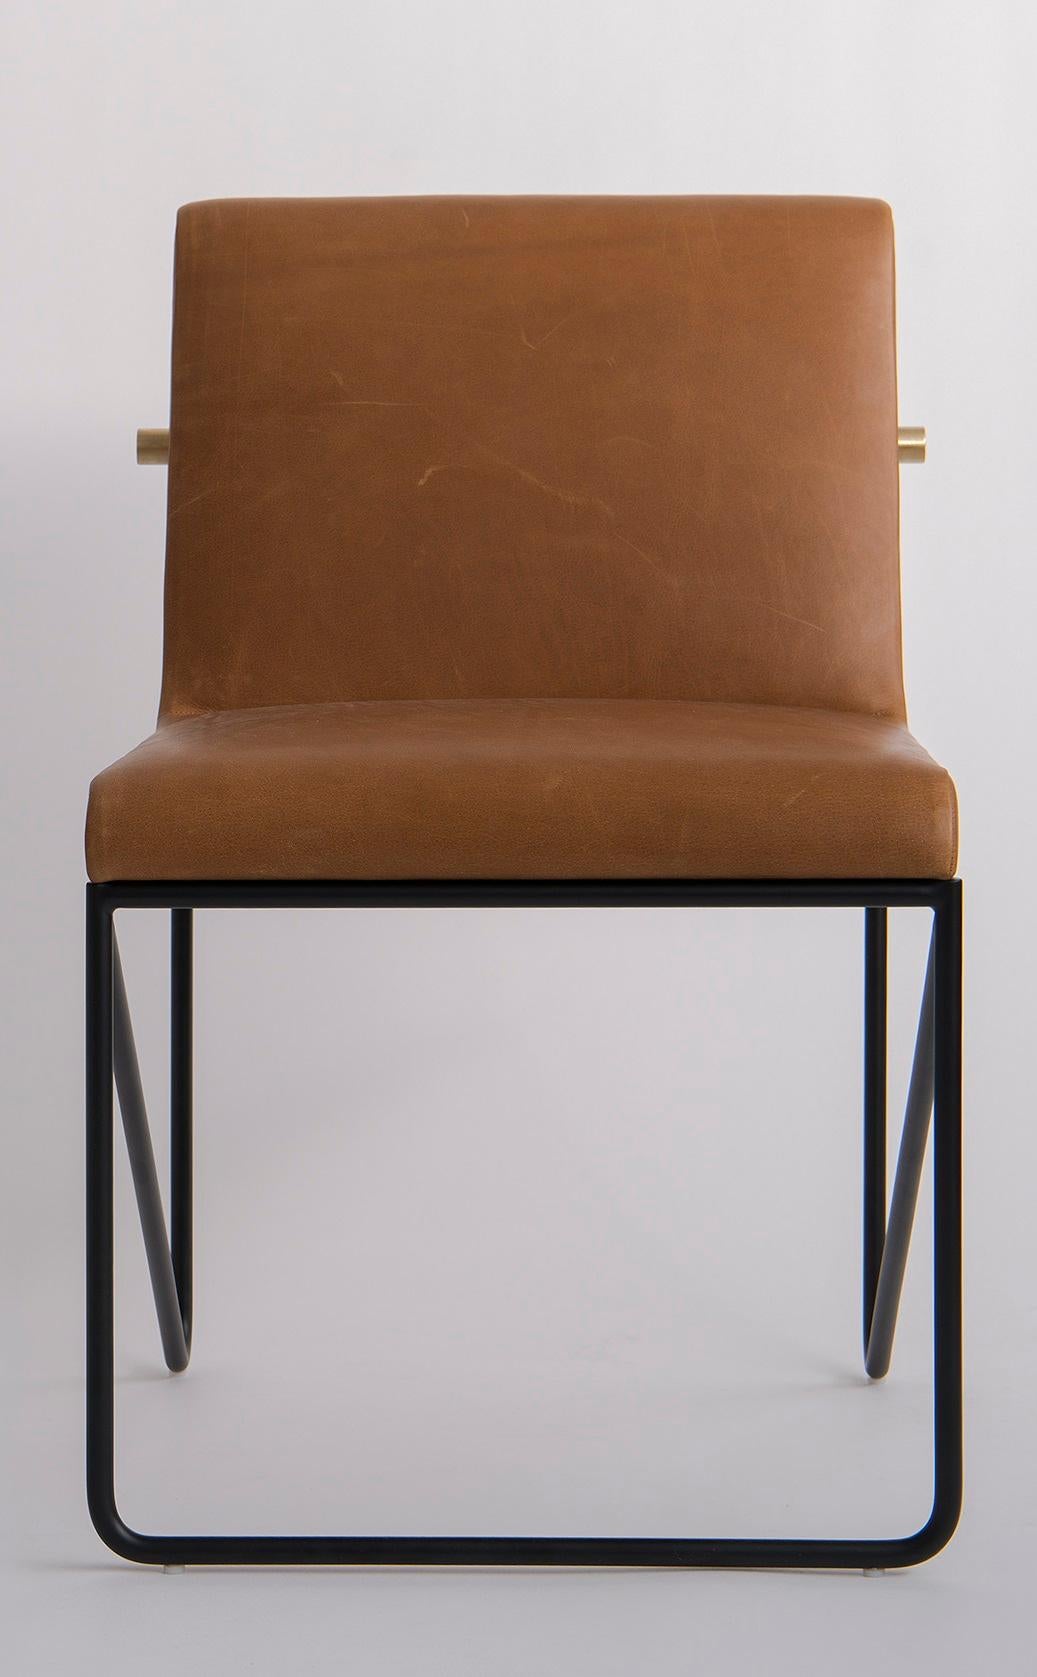 Kickstand Sessel ohne Armlehne von Phase Design
Abmessungen: T 63,5 x B 55,9 x H 79,4 cm. 
MATERIALIEN: Leder, pulverbeschichtetes Metall und gebürstetes Messing.

Massive Stahlstange in schwarzer oder weißer Pulverbeschichtung mit massiver